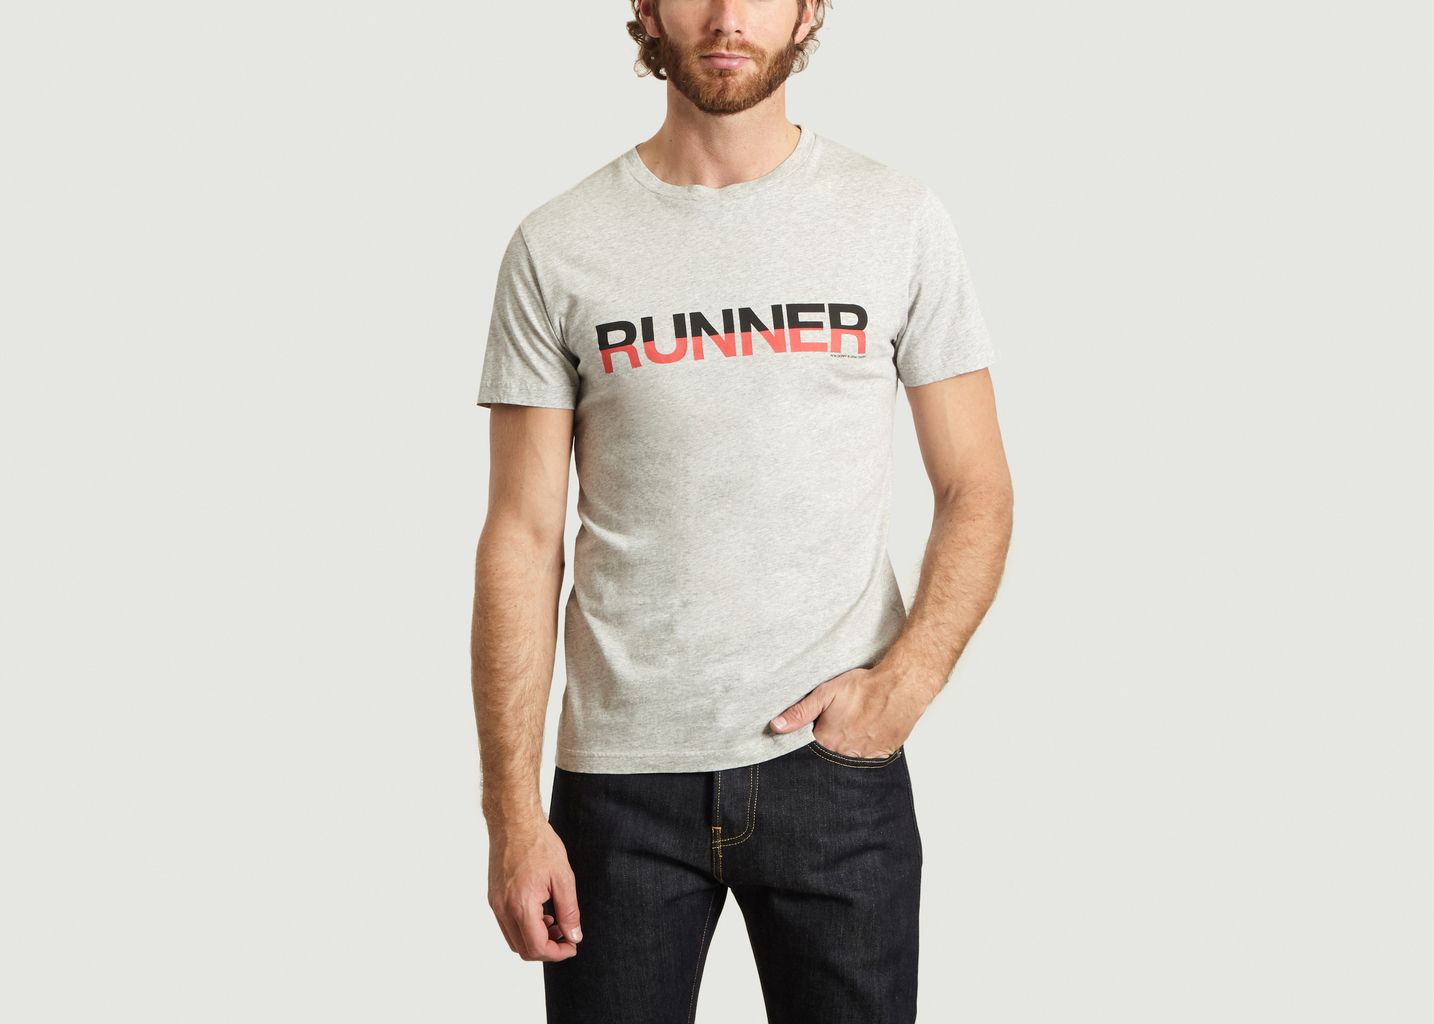 Runner T-Shirt - Ron Dorff